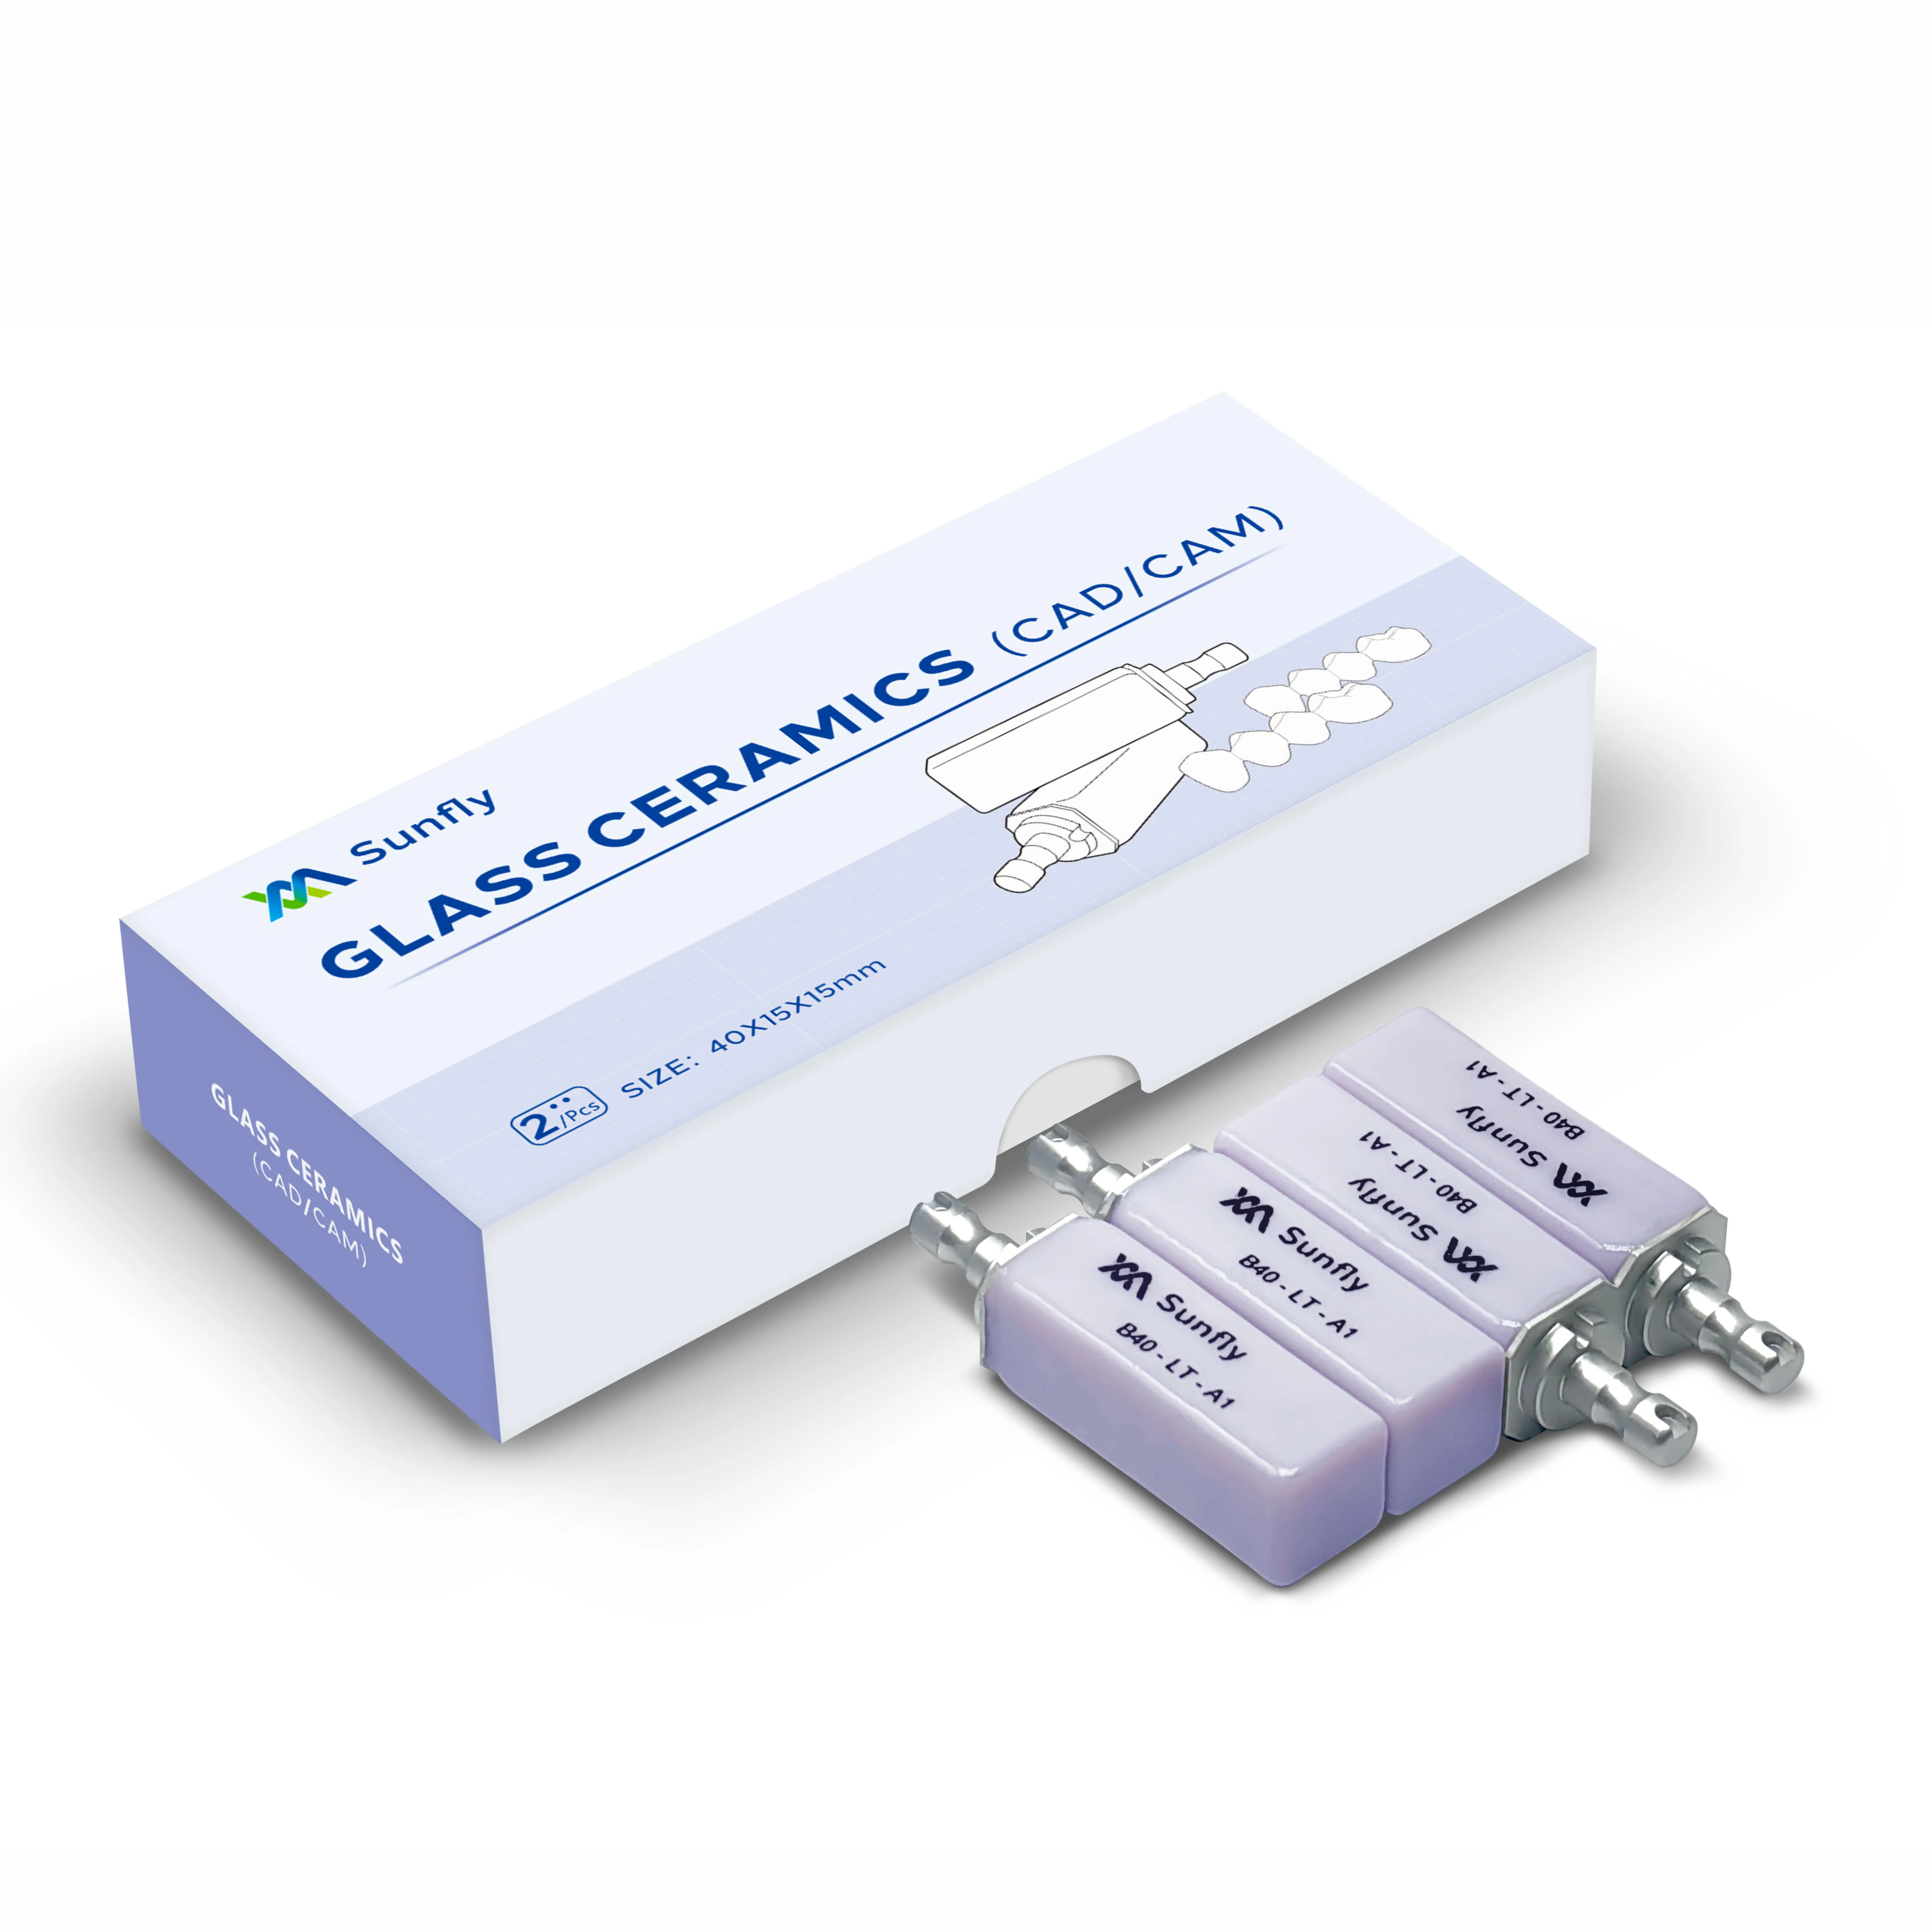 Sunfly medical A2 C14 B40 ips empress cad для cerec и inlab blocks зубные слитки 95 огнеупорный глиноземный керамический блок